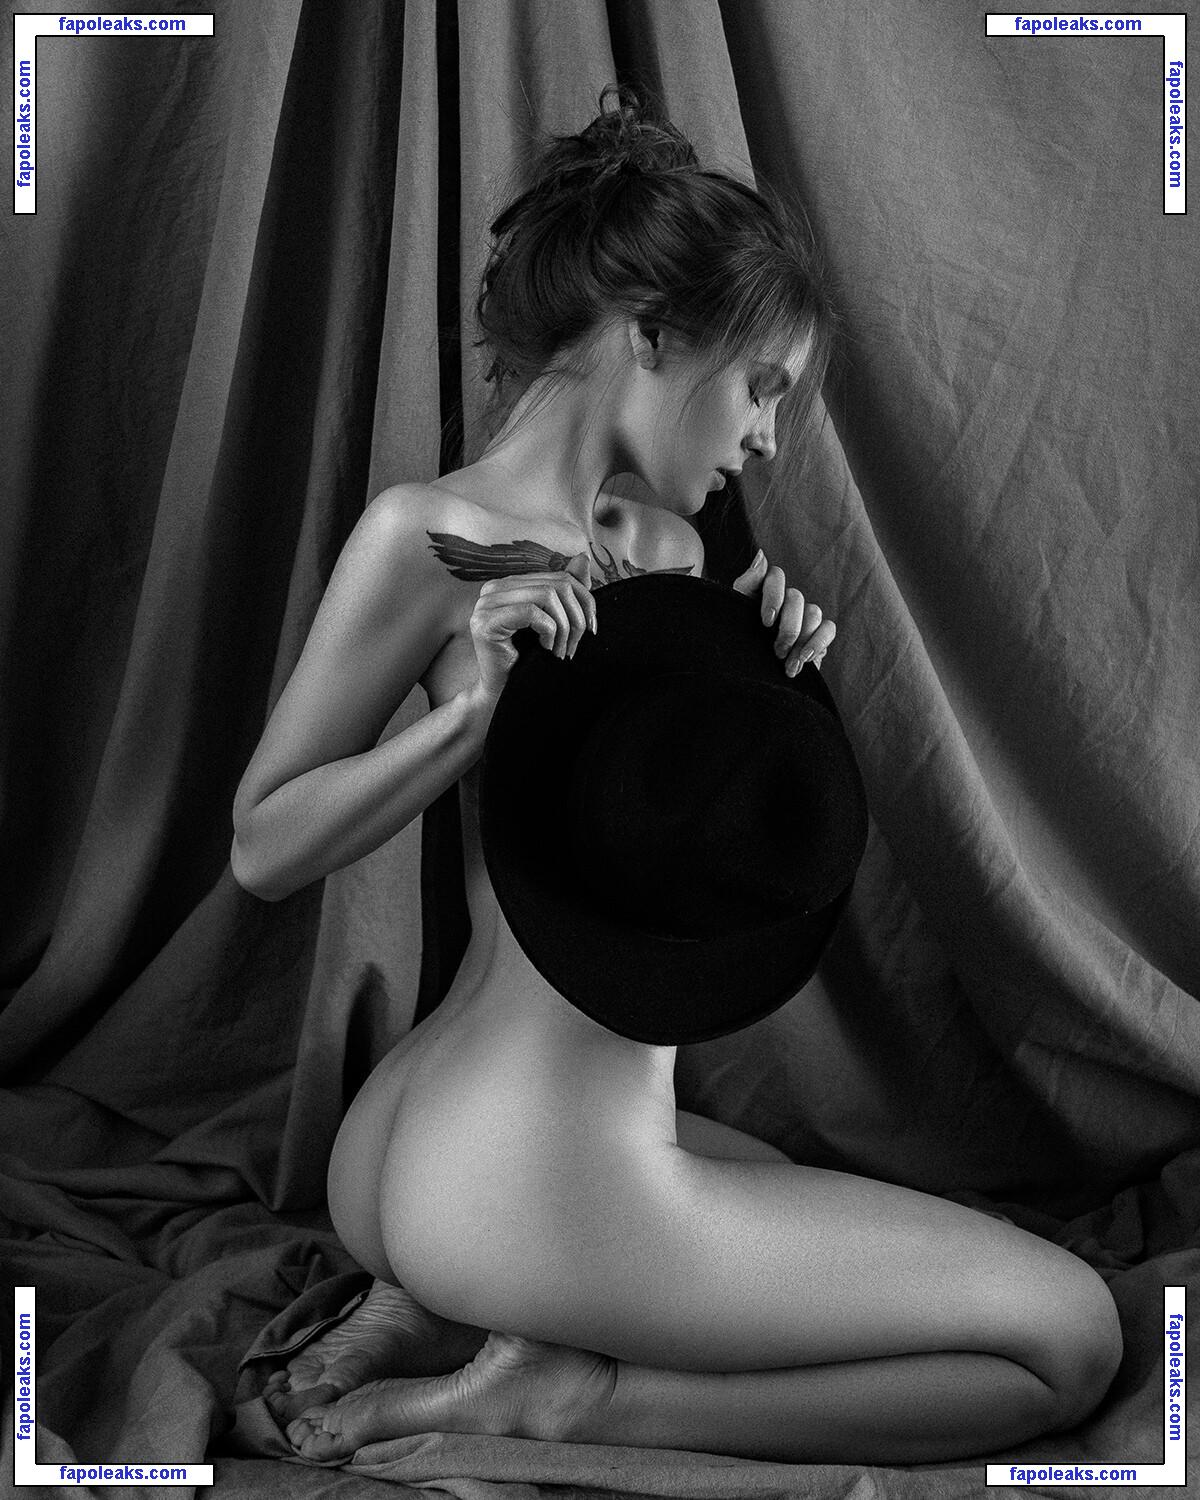 Ekaterina Klein / eka.klein nude photo #0056 from OnlyFans